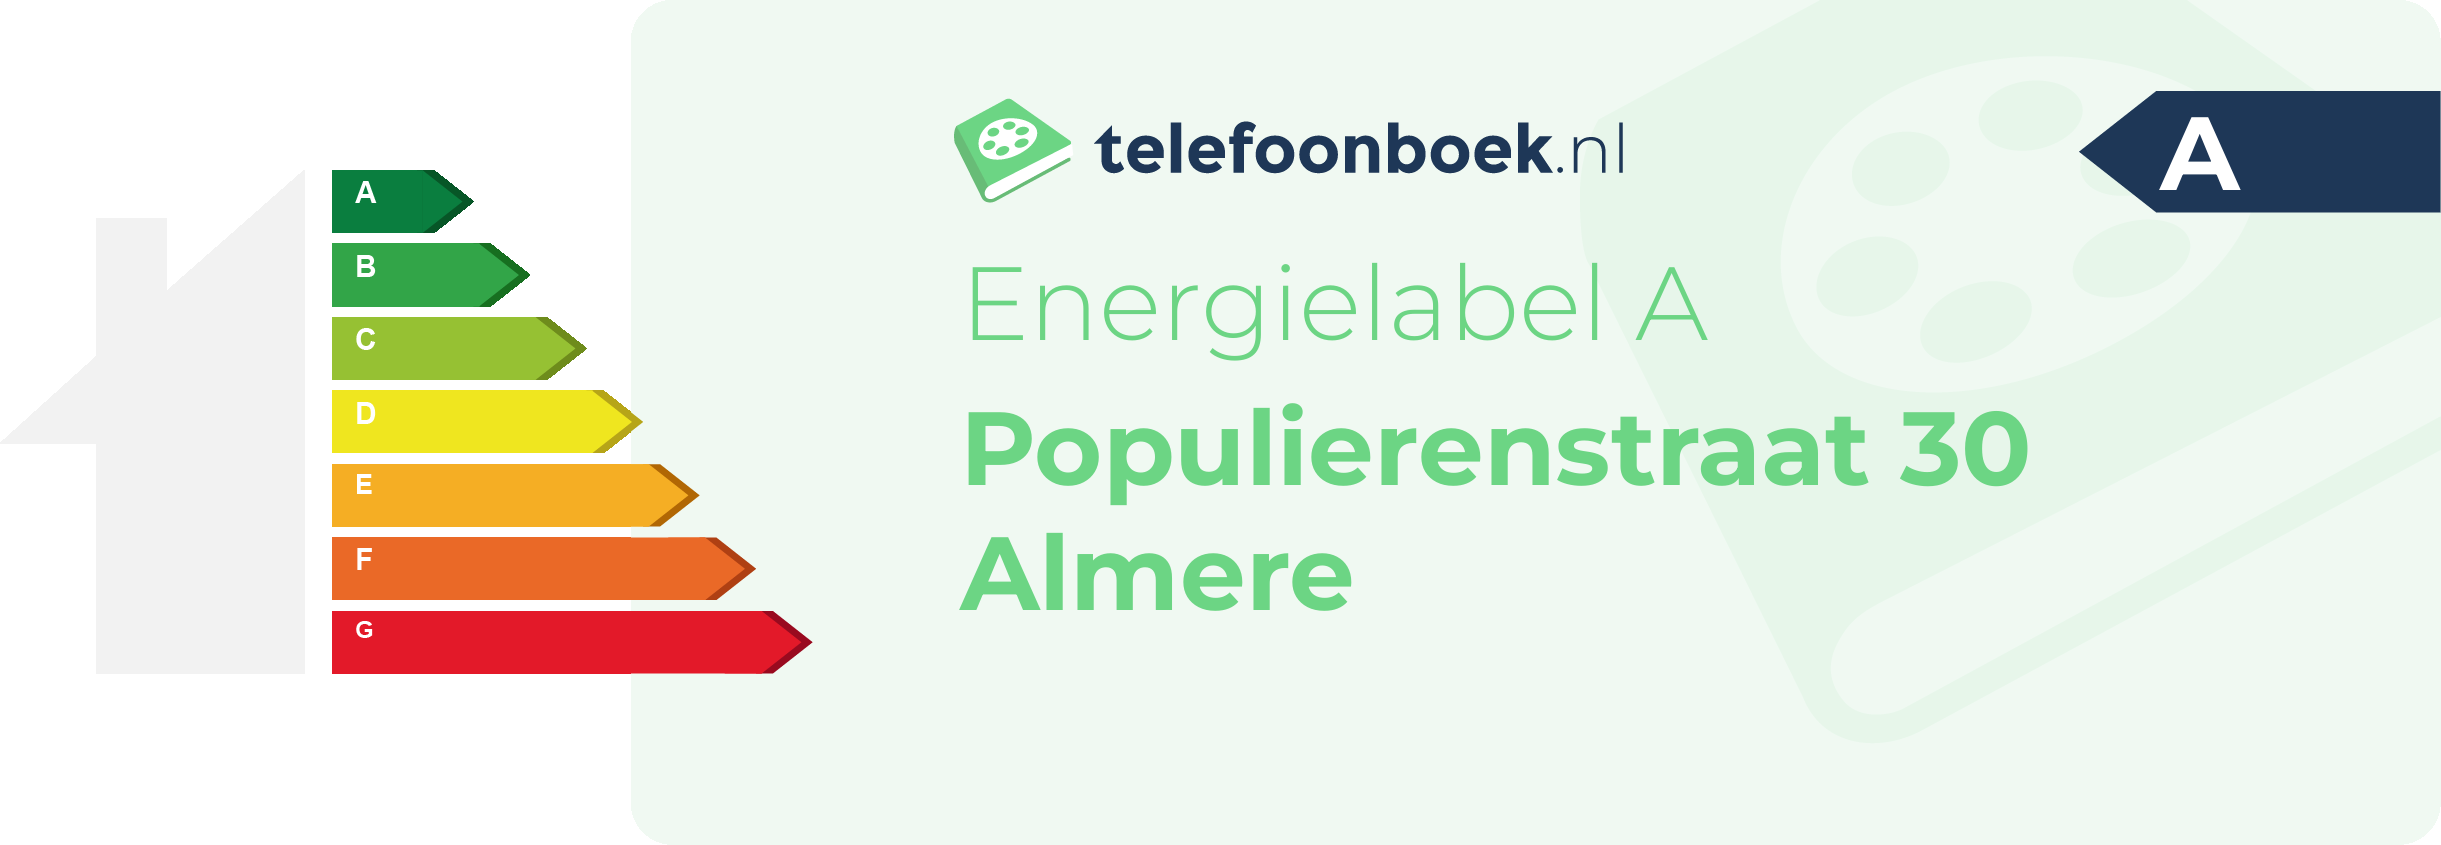 Energielabel Populierenstraat 30 Almere